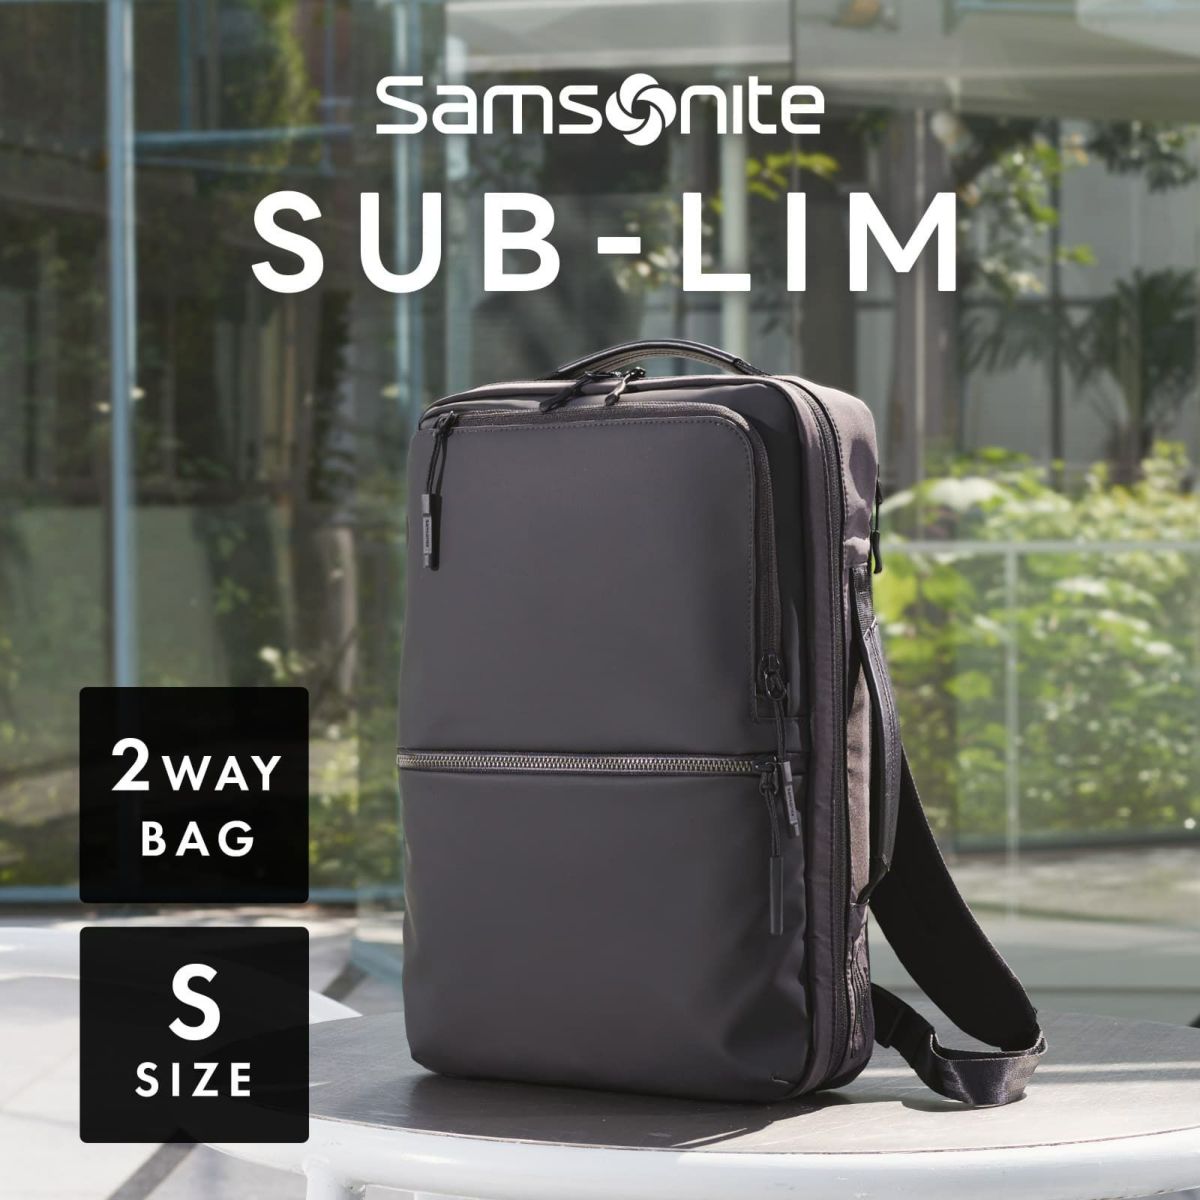 サムソナイト Samsonite , ビジネスバッグ 2way , SUB-LIM 2WAY BAG S